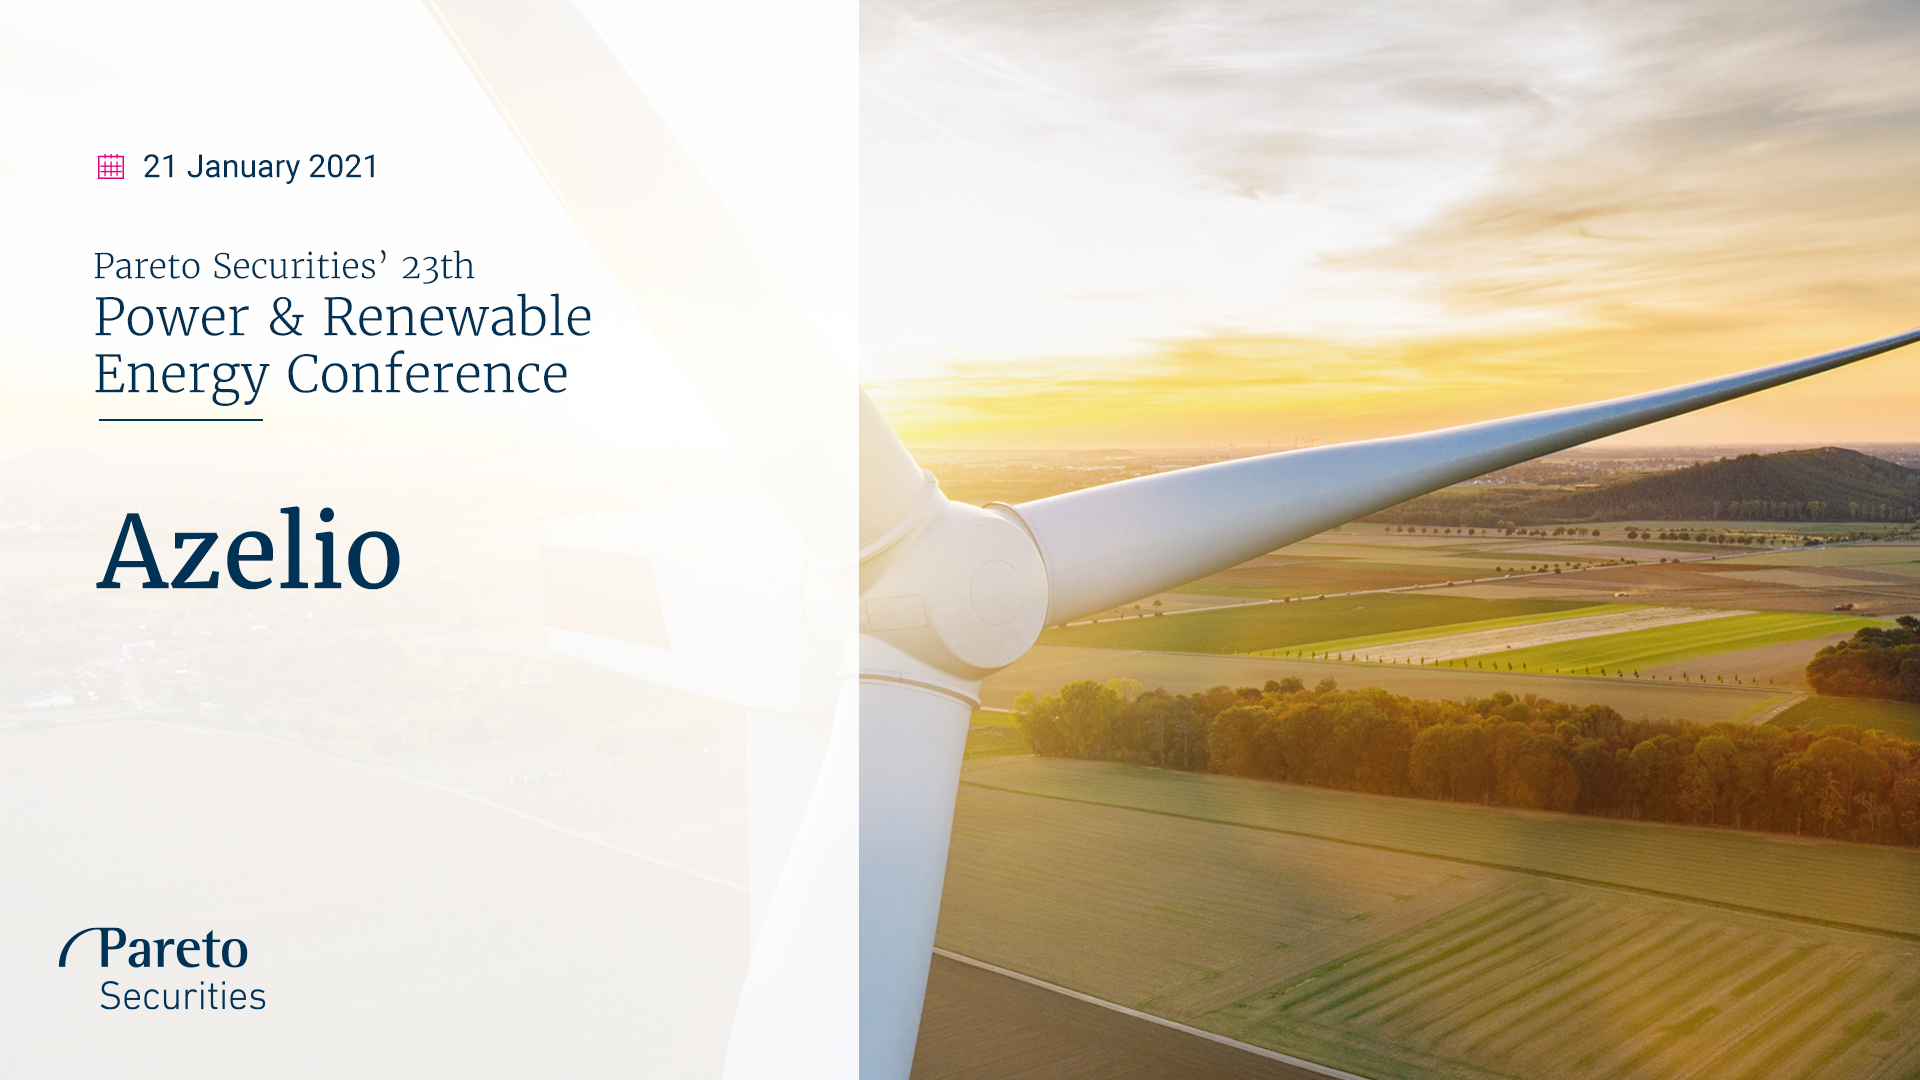 Azelio / Pareto Securities’ Power & Renewable Energy Conference